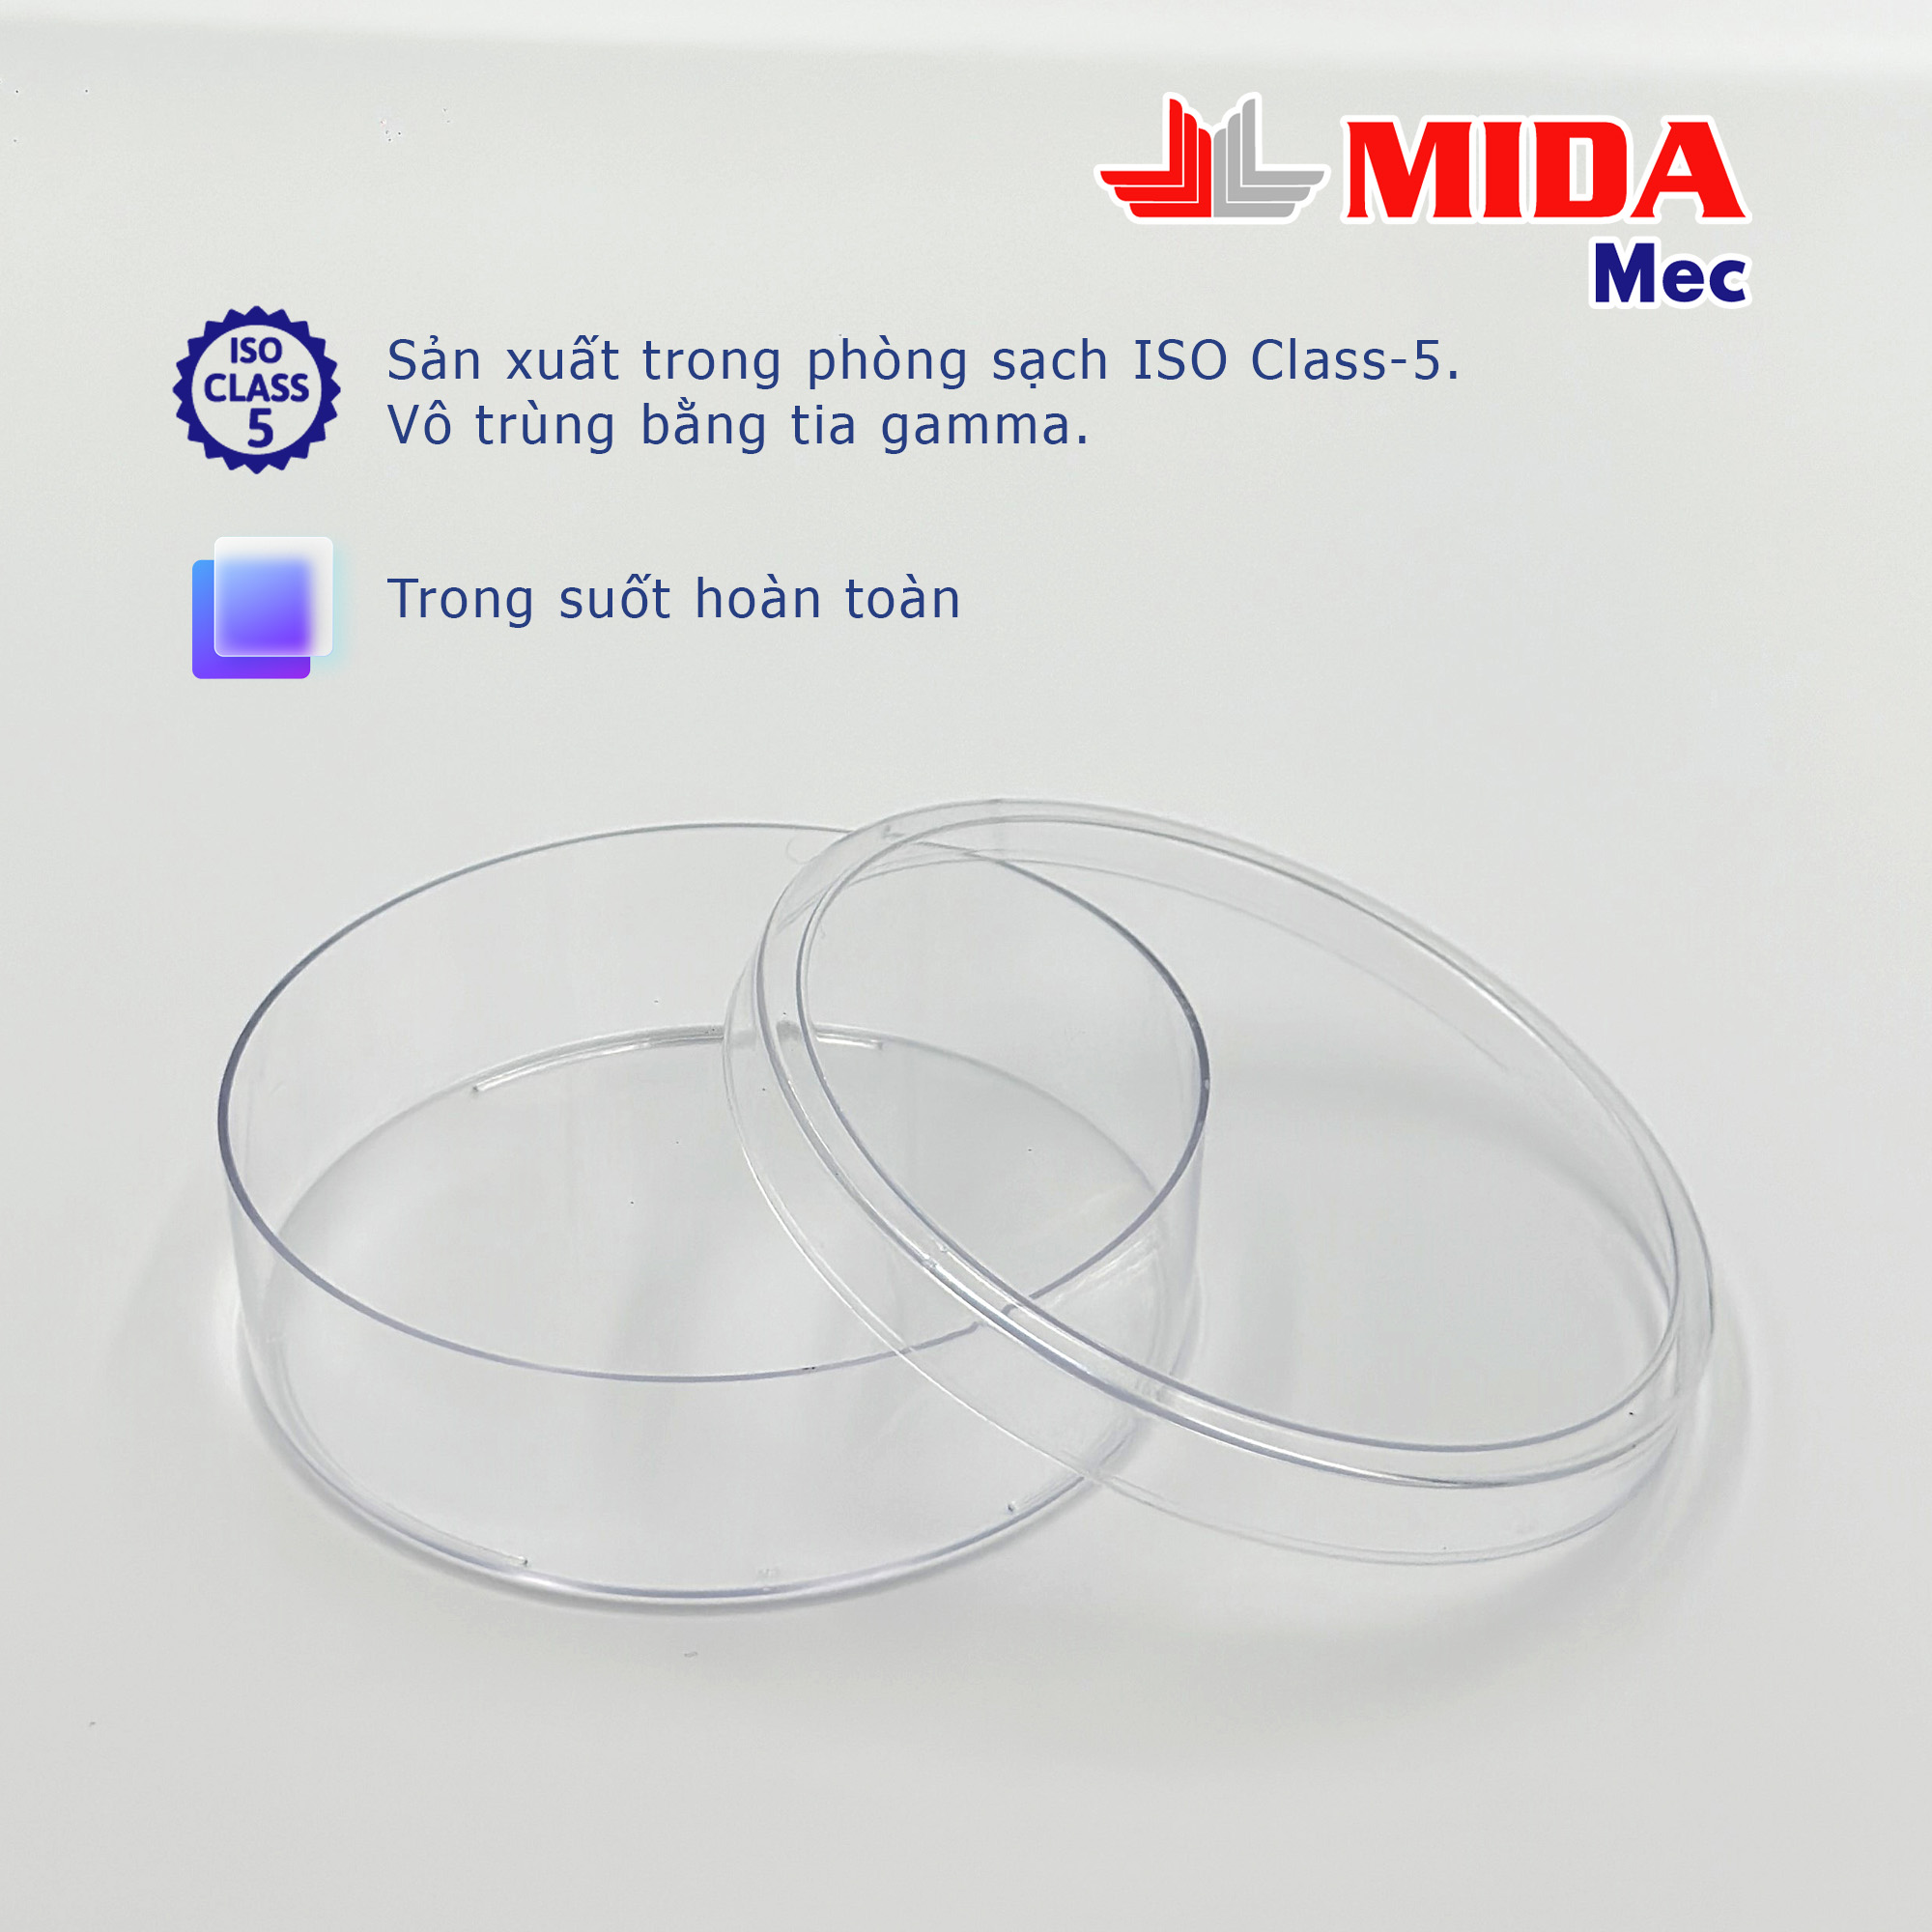 Đĩa Petri nhựa MidaMec 10025 đã tiệt trùng 400 cái/thùng